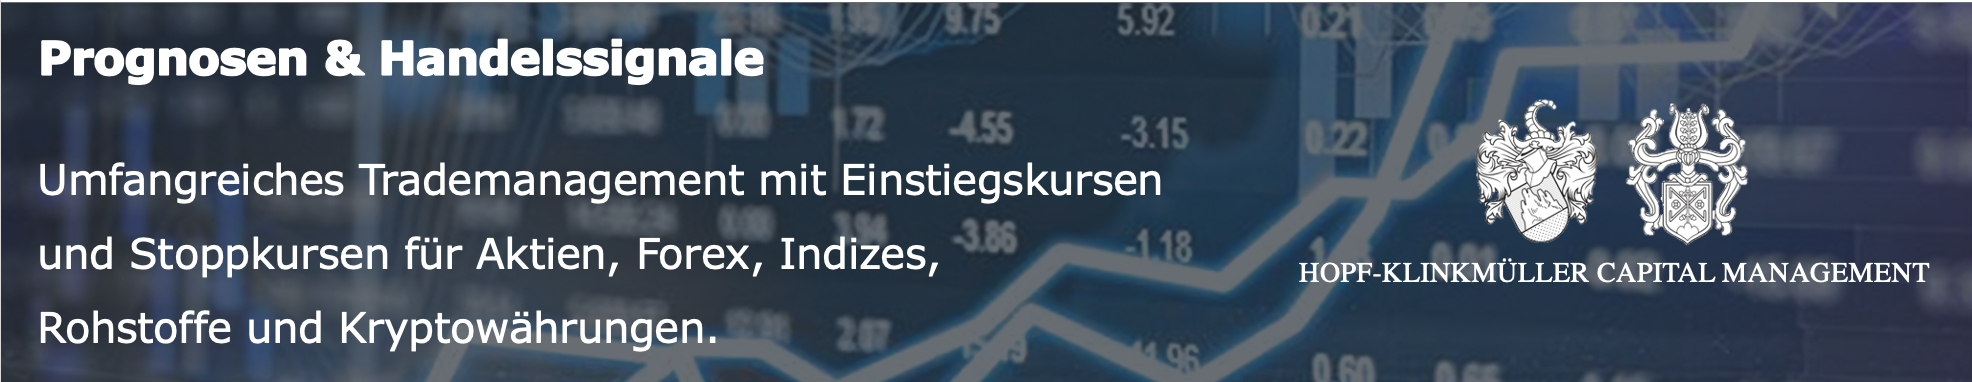 Deutsche Bank Fur Uns Ein Kaufsignal Seite 1 16 10